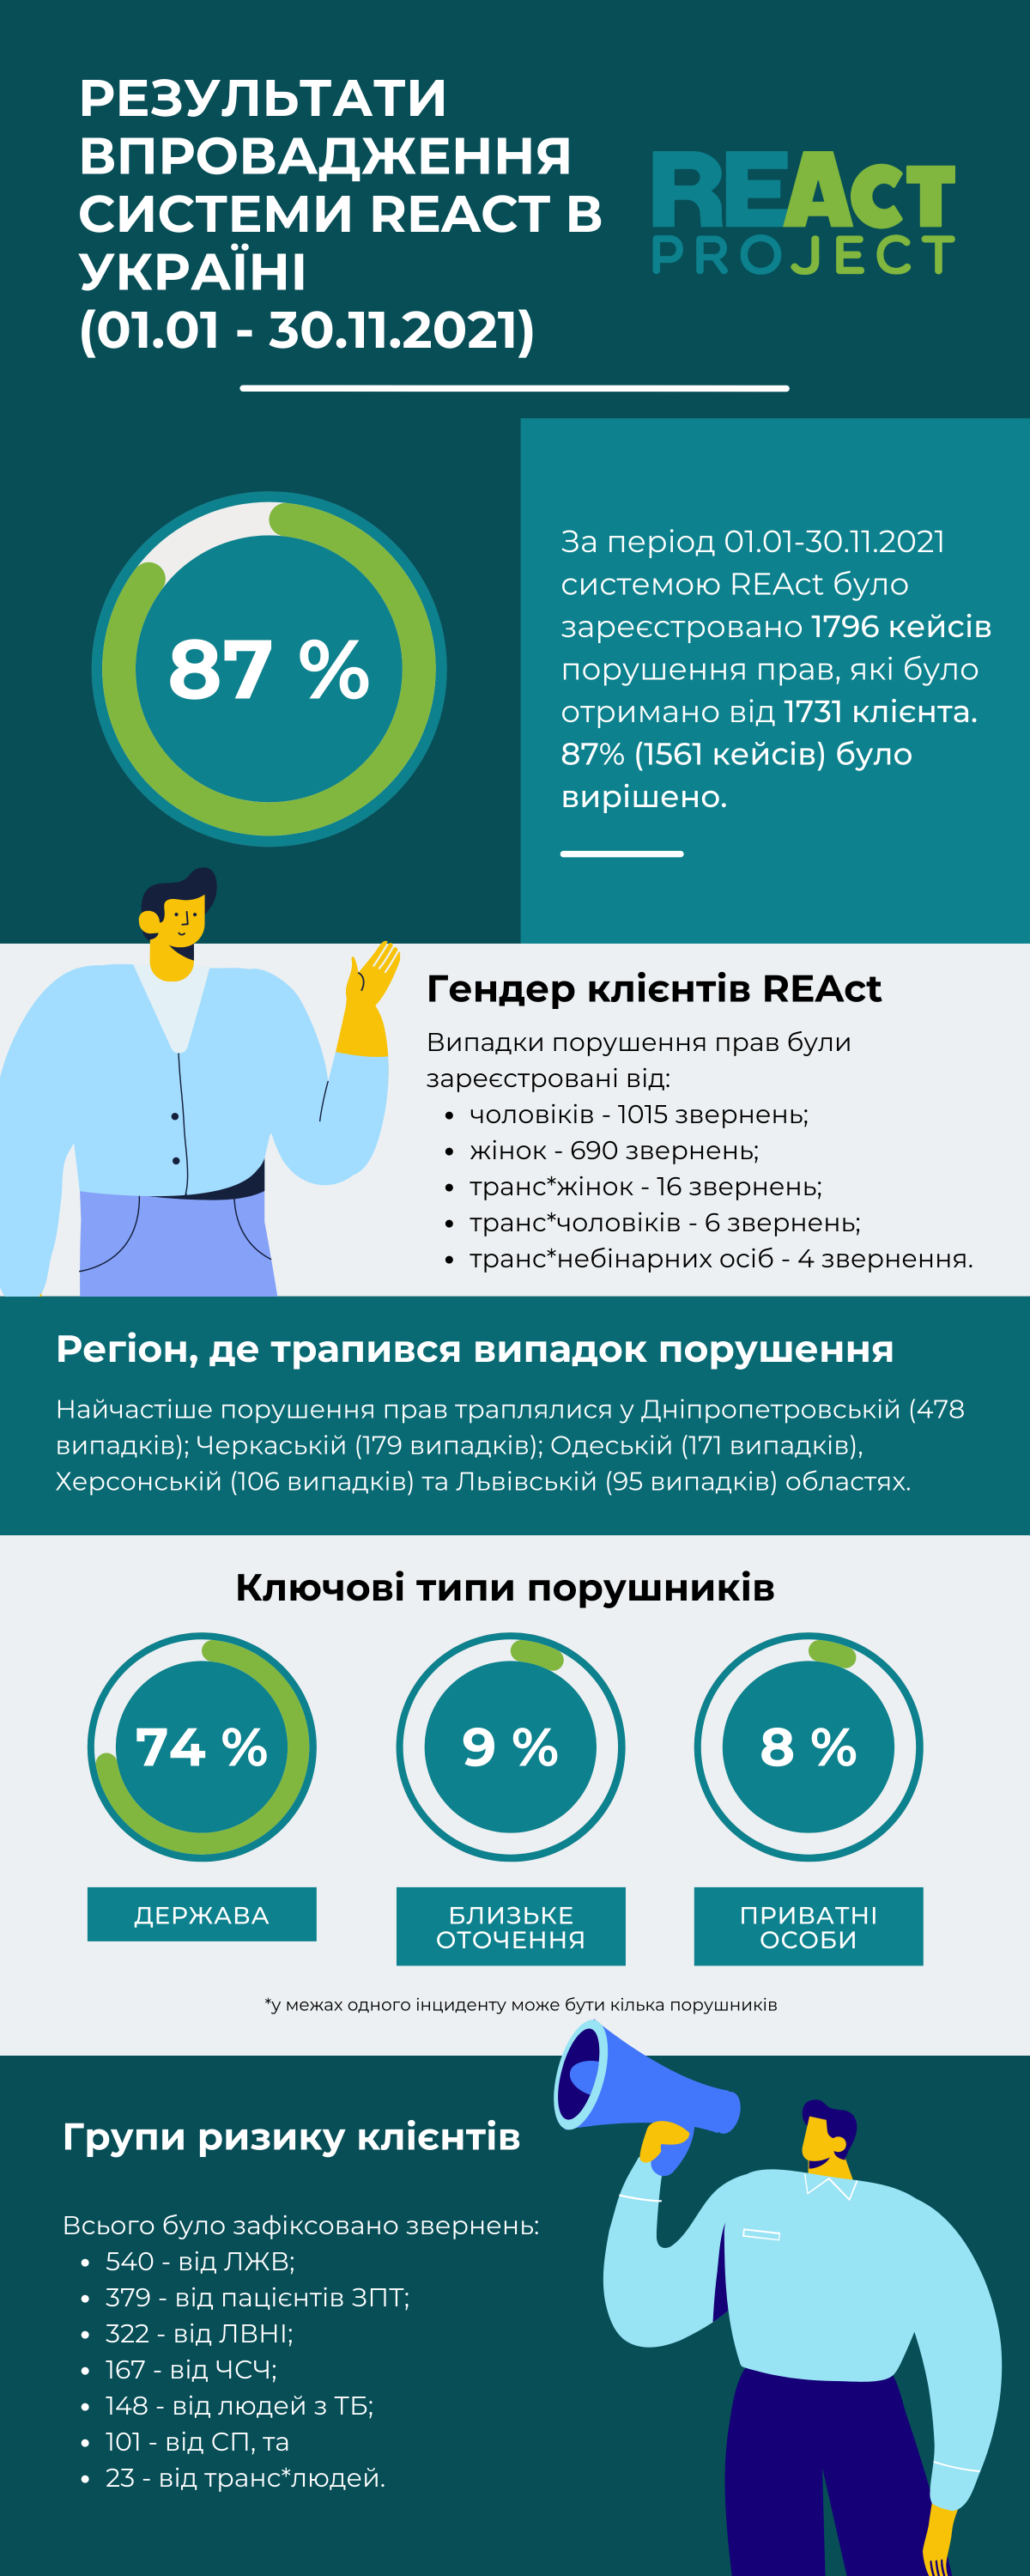 Інформація про роботу REAct в Україні за січень-листопад 2021р.